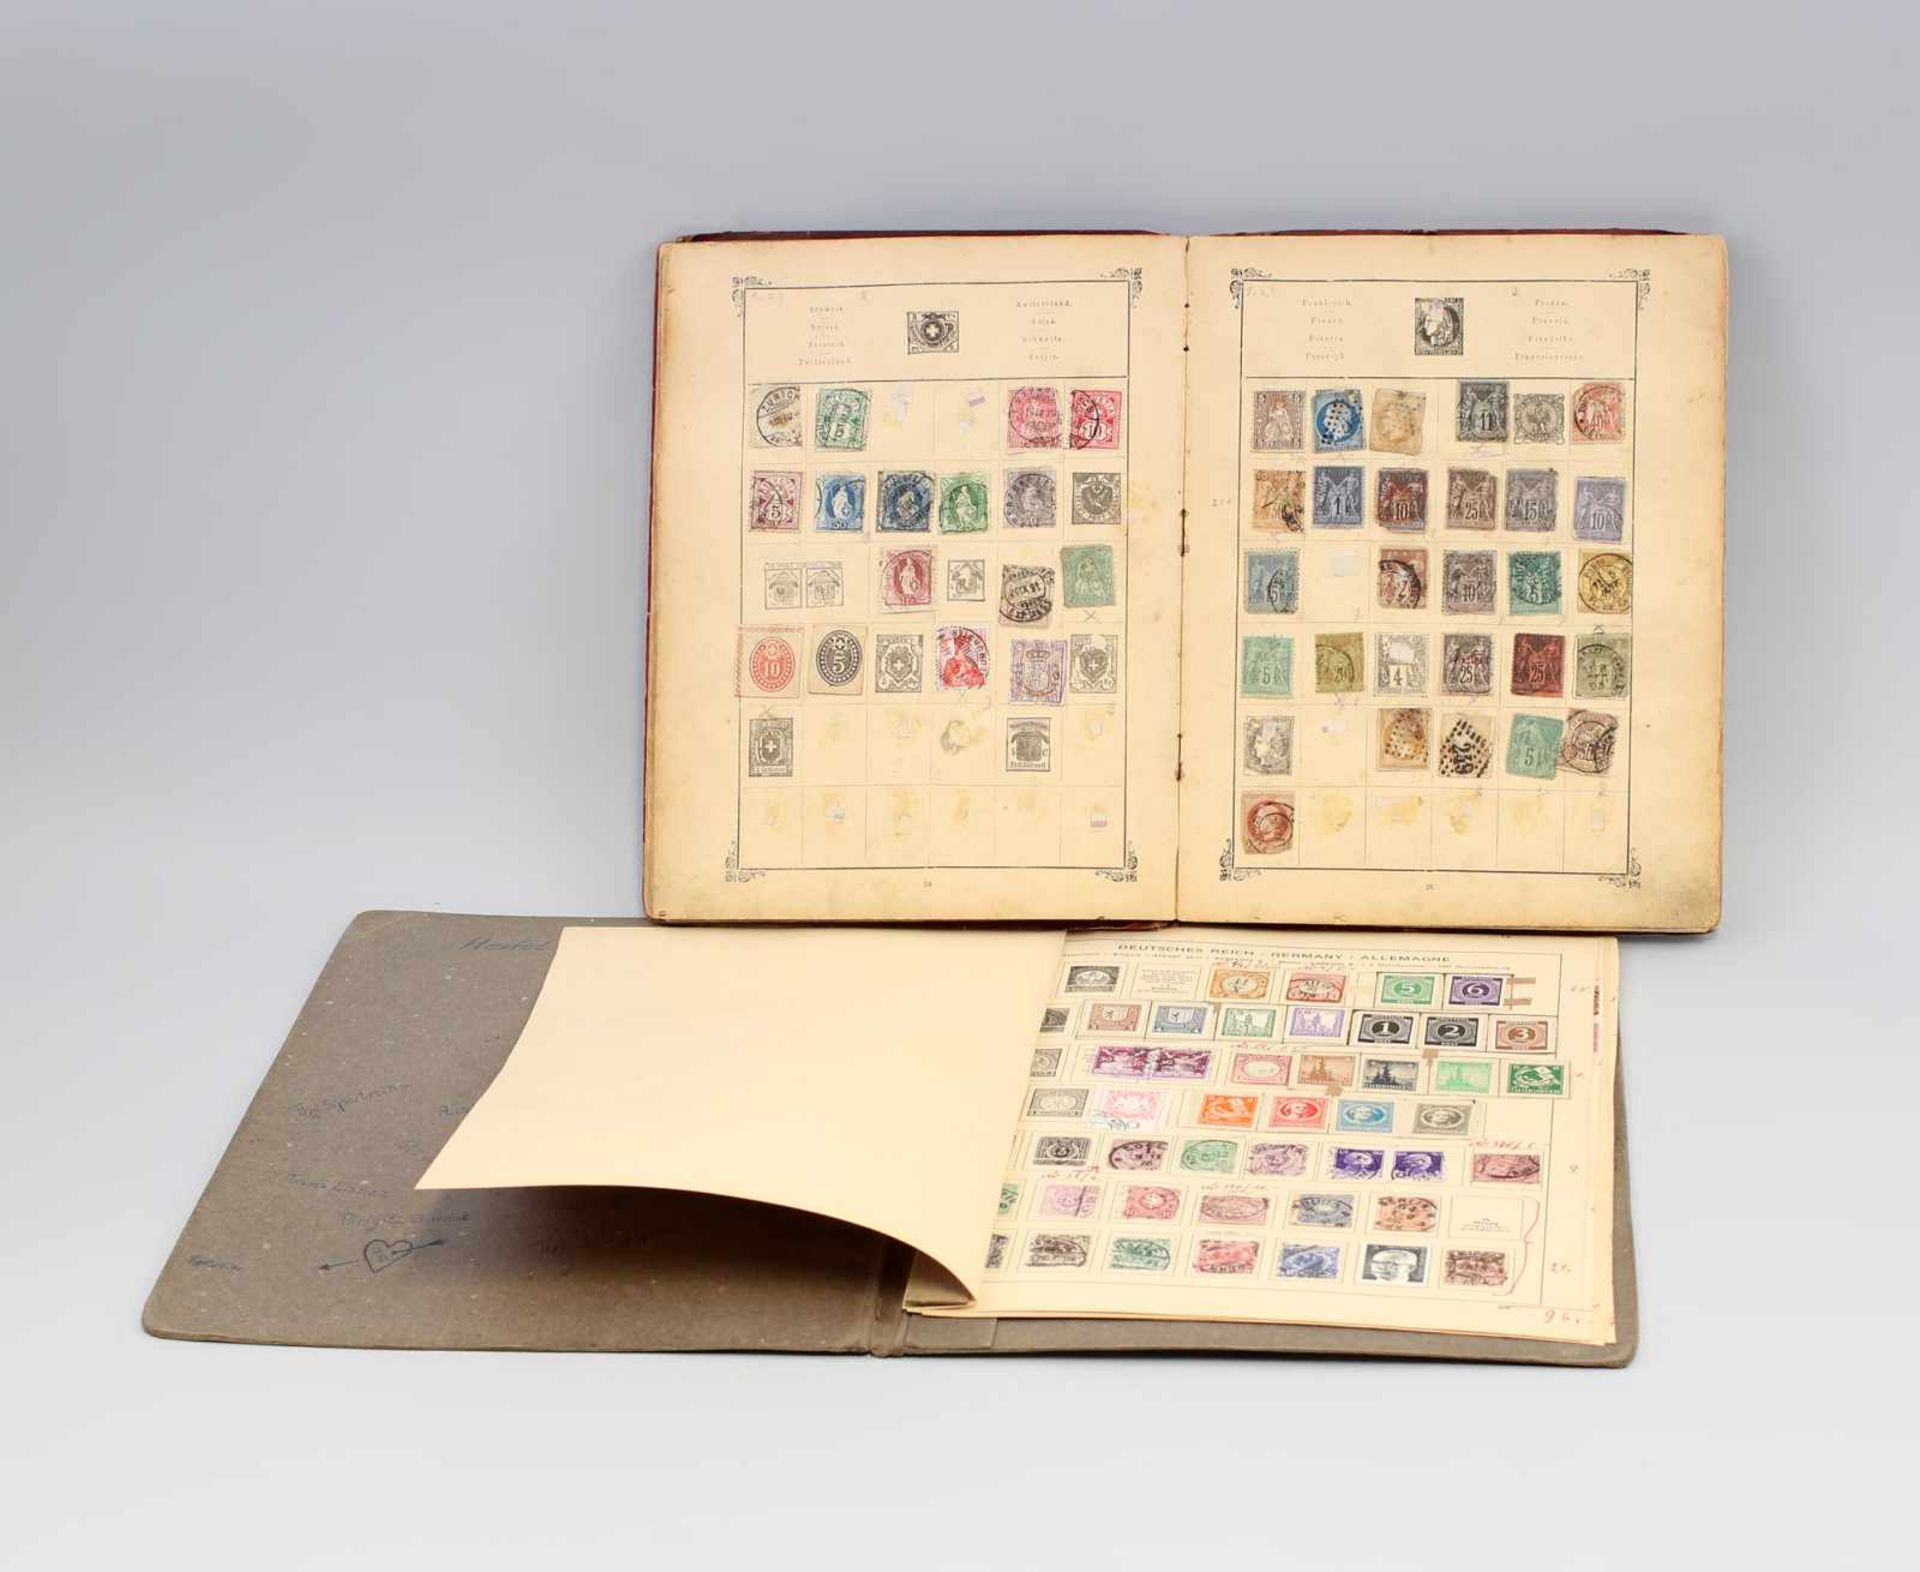 2 Alte Briefmarkenalben aller Welt dabei "Illustrirtes Briefmarken-Album" um 1900, teilweise mit